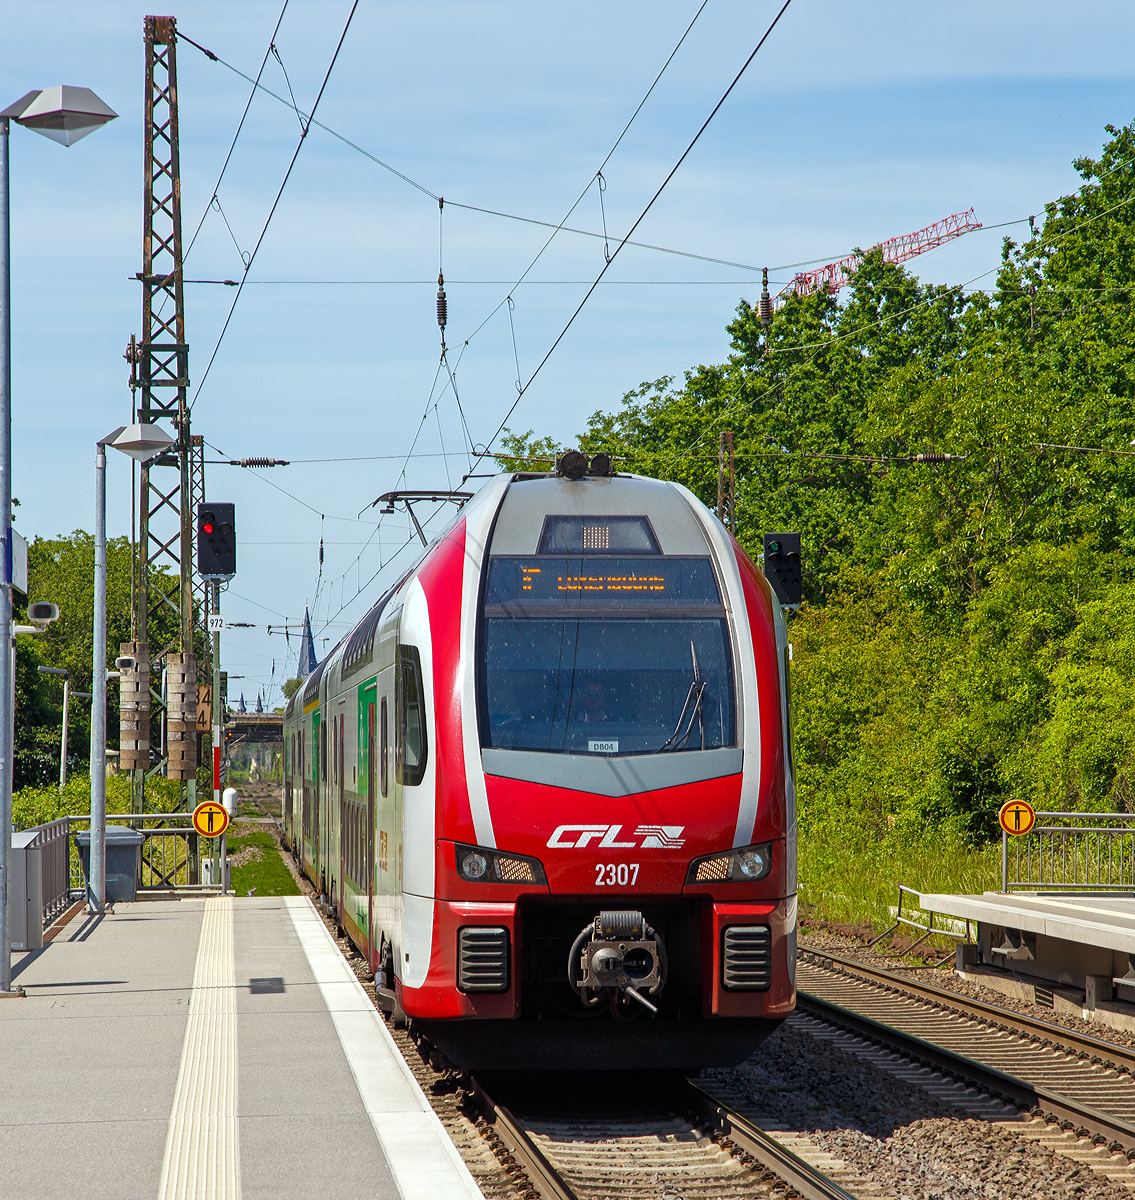 
Der CFL 2307, ein Stadler KISS, fährt am 01.06.2019 als IC 5106 (Düsseldorf Hbf - Koblenz Hbf - Trier Hbf - Luxembourg) durch den Bahnhof Bonn UN Campus (in Bonn-Gronau) in Richtung Koblenz. Ab Koblenz Hbf verkehrt er als RE 1 und ab Trier Hbf als RE 11.